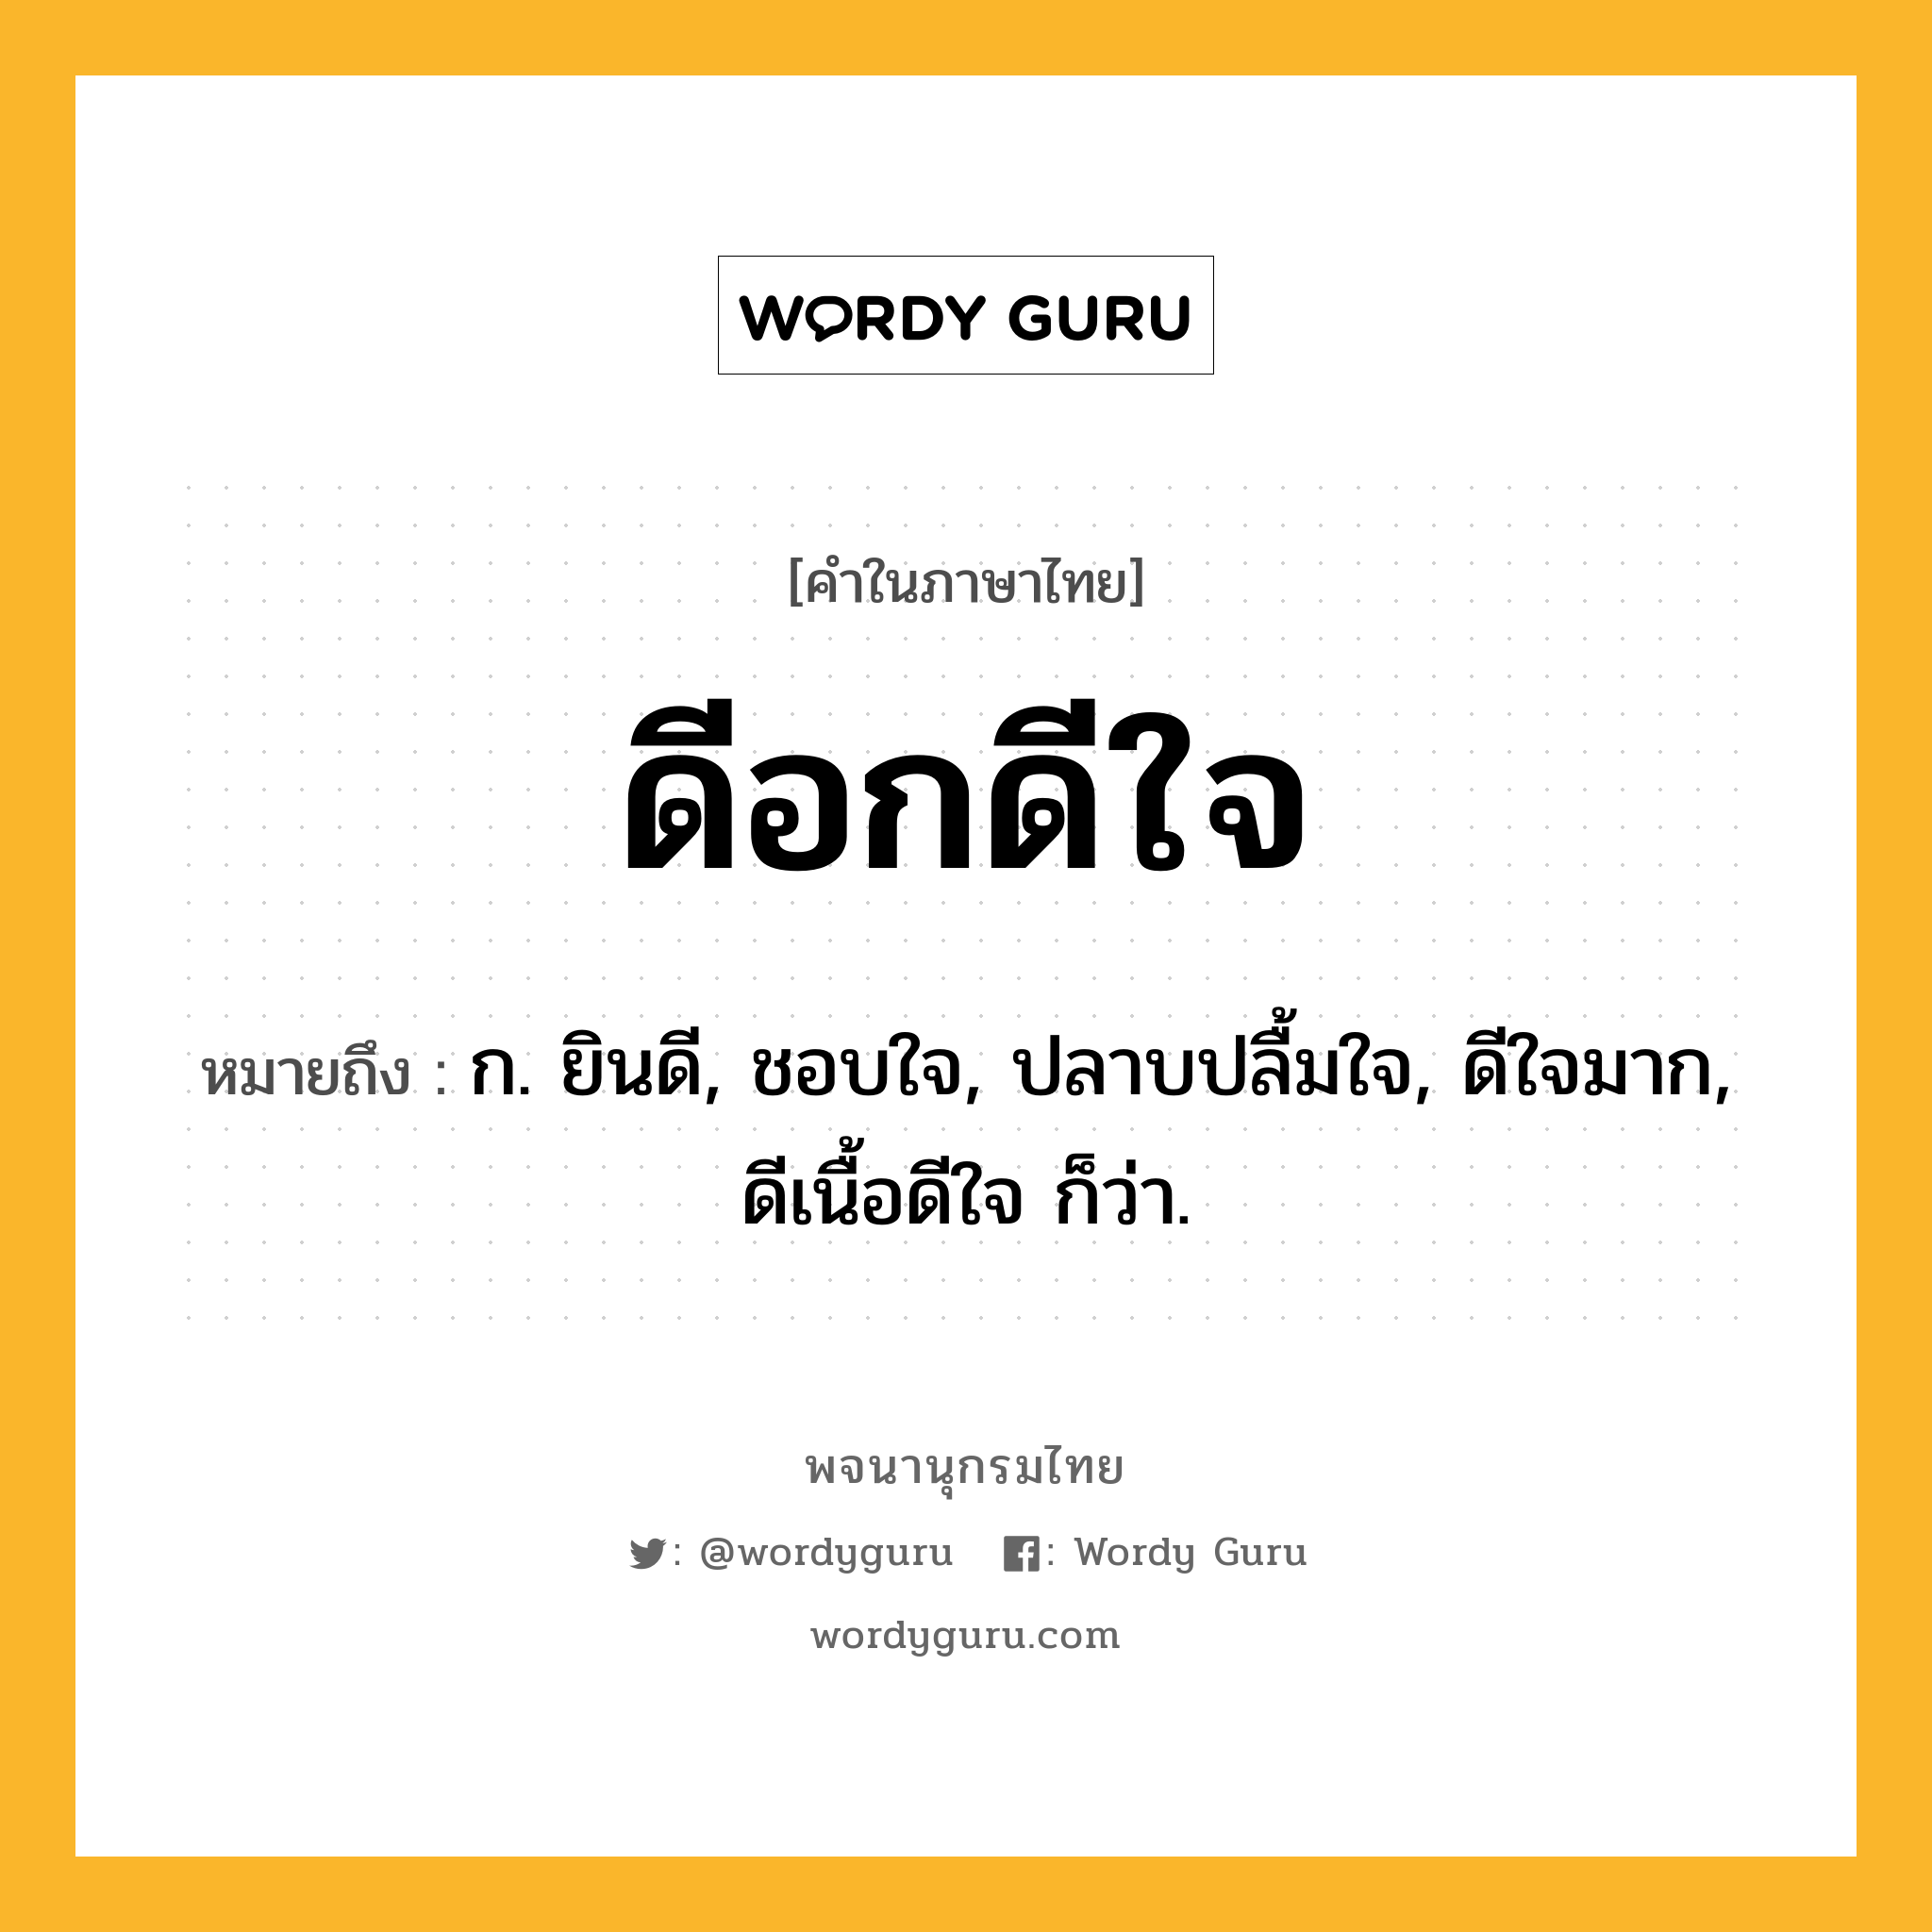 ดีอกดีใจ ความหมาย หมายถึงอะไร?, คำในภาษาไทย ดีอกดีใจ หมายถึง ก. ยินดี, ชอบใจ, ปลาบปลื้มใจ, ดีใจมาก, ดีเนื้อดีใจ ก็ว่า.